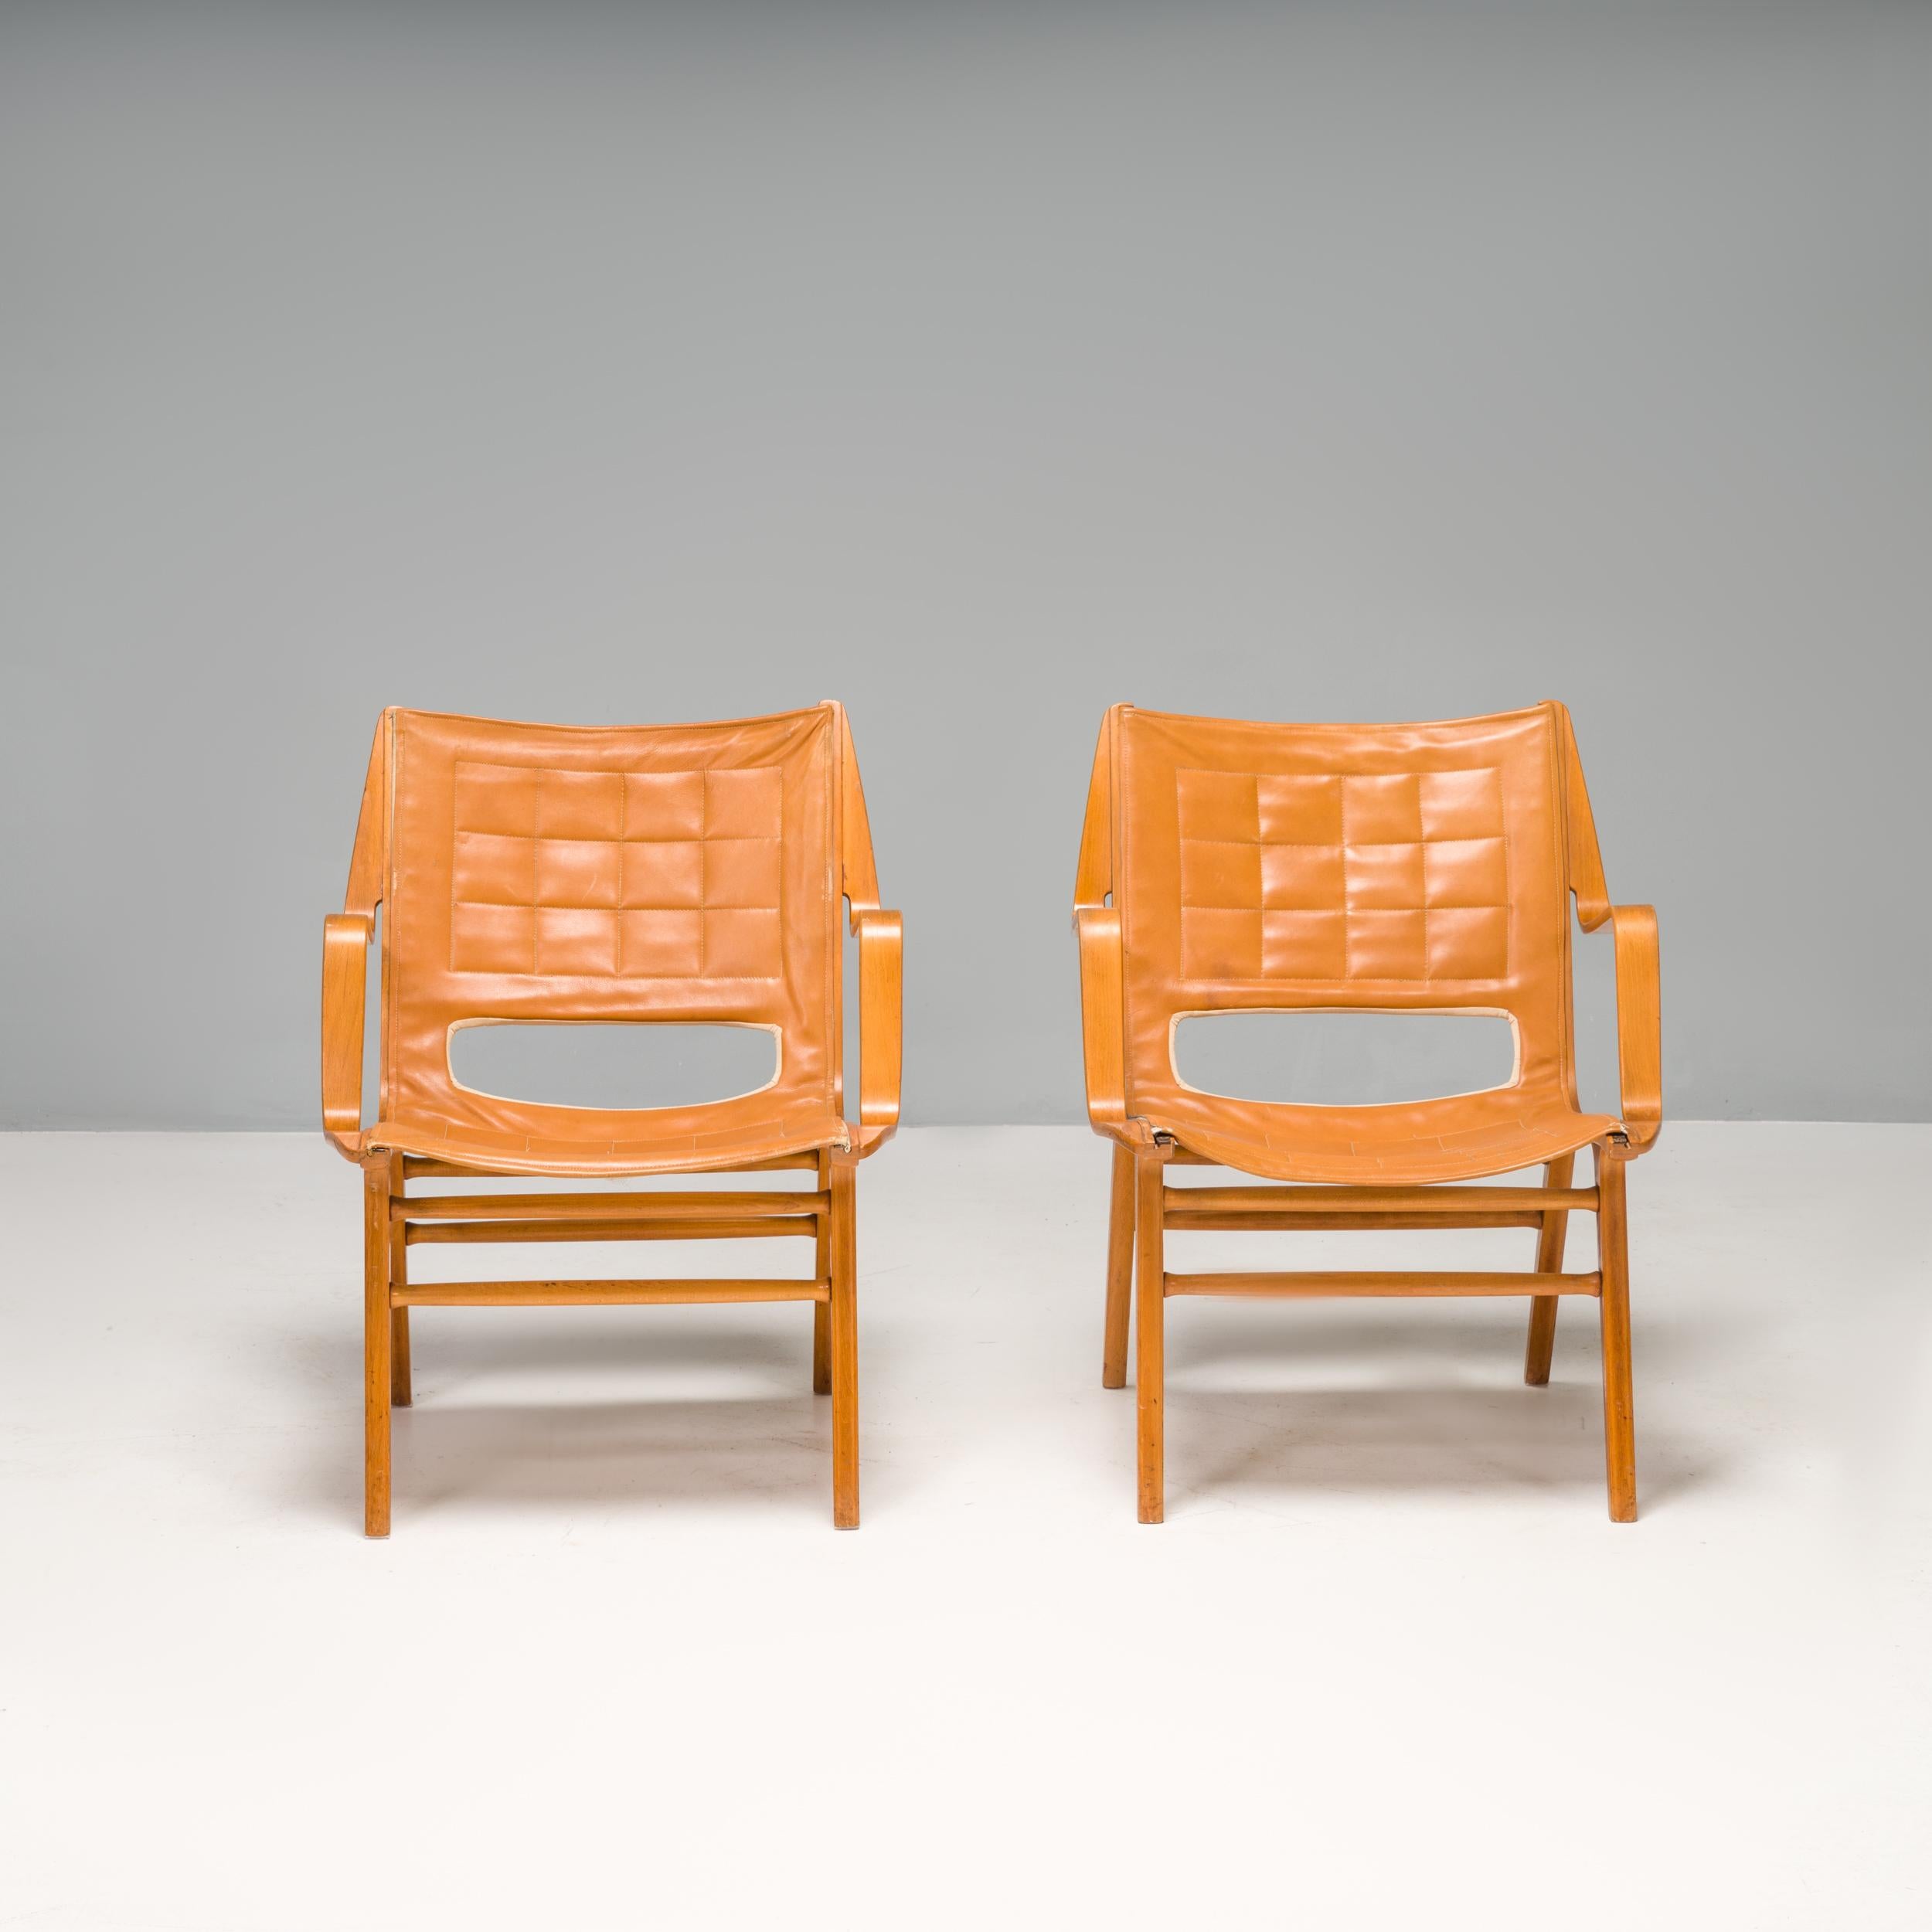 Conçue à l'origine en 1947 par les architectes danois Peter Hvidt & Orla Mølgaard-Nielsen, la chaise AX 6060 a été fabriquée par Fritz Hansen.

Exemple fantastique du design danois du milieu du siècle, les chaises AX sont construites à partir d'un